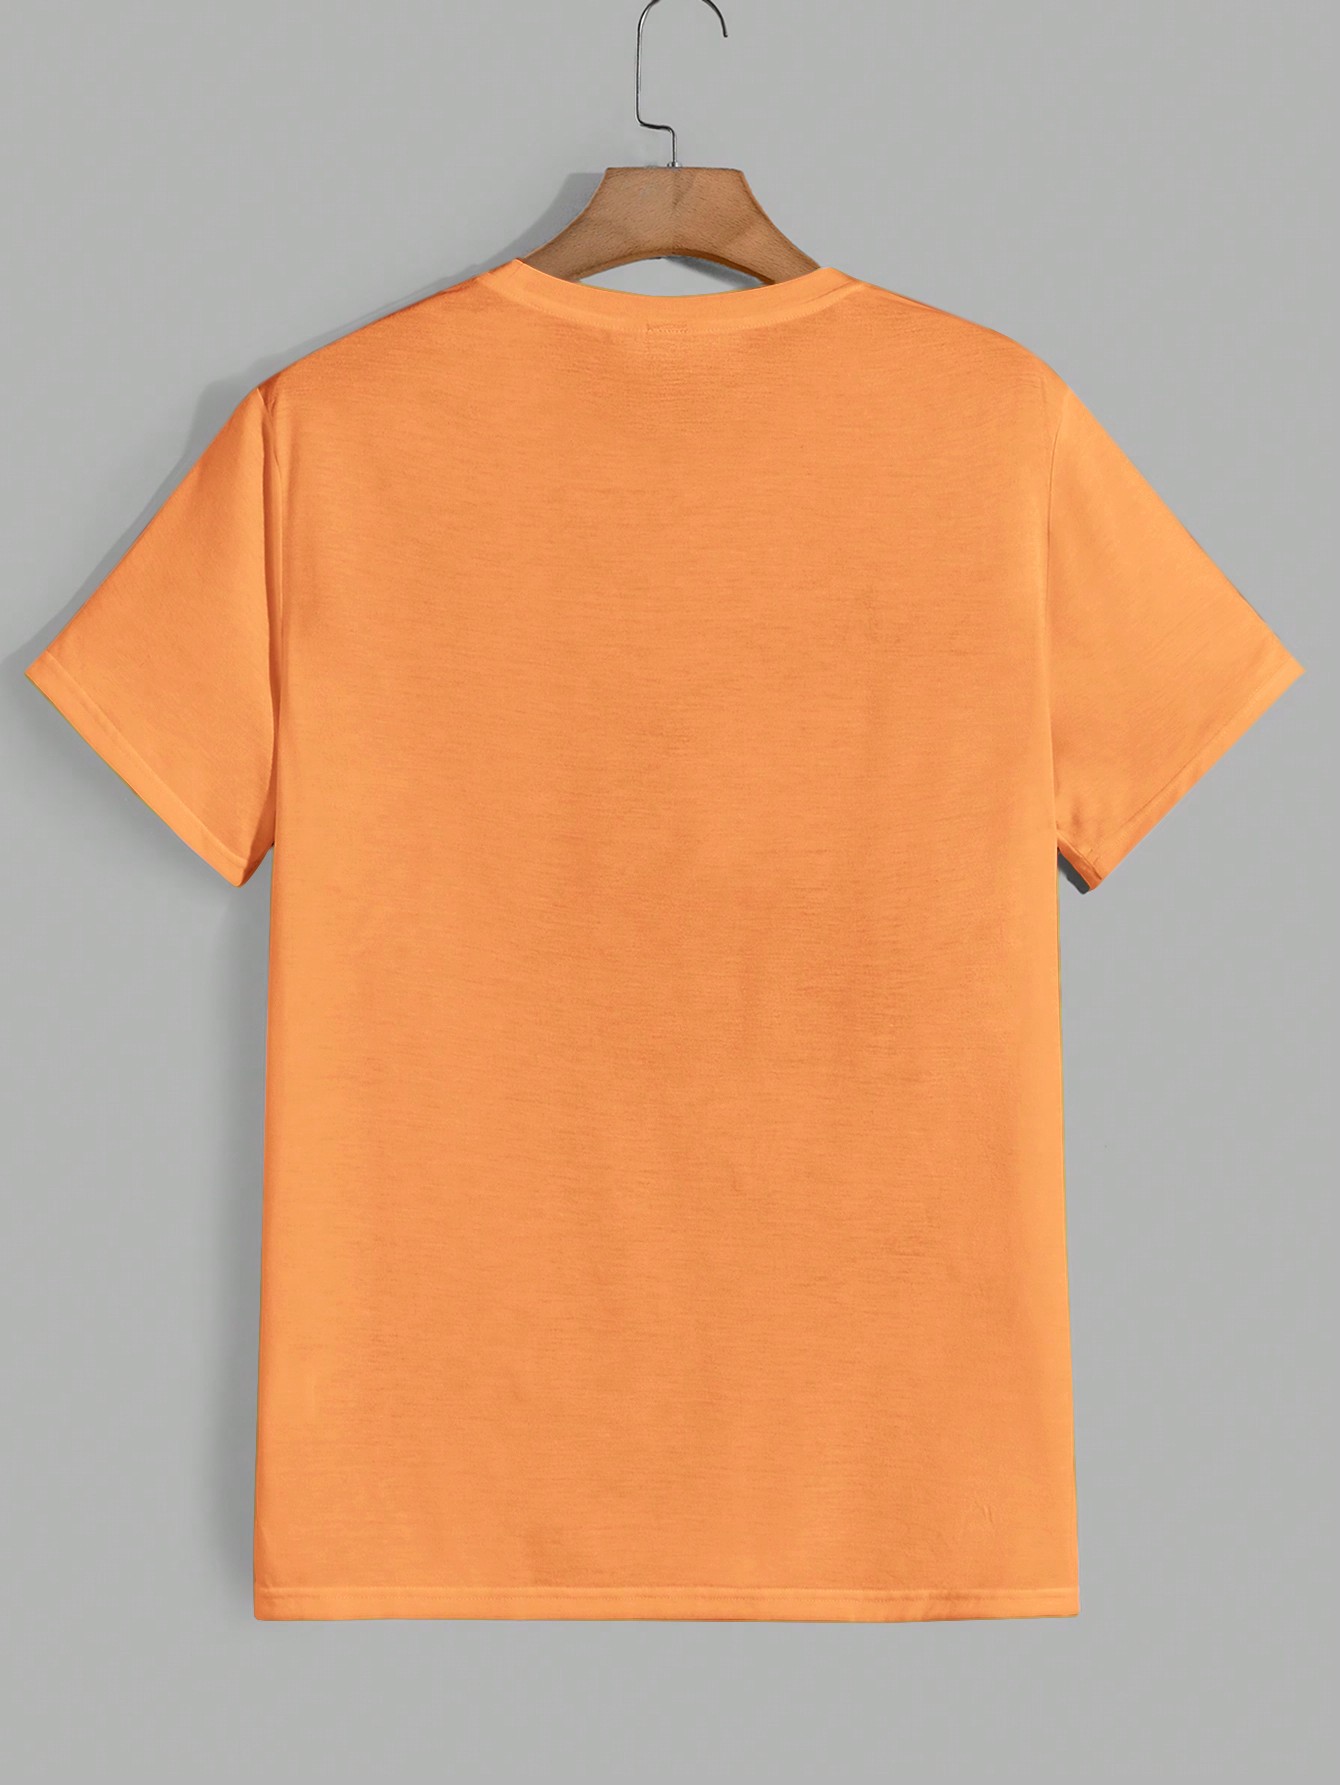 Мужская футболка с короткими рукавами и принтом персонажей аниме Manfinity Hypemode, жженый апельсин